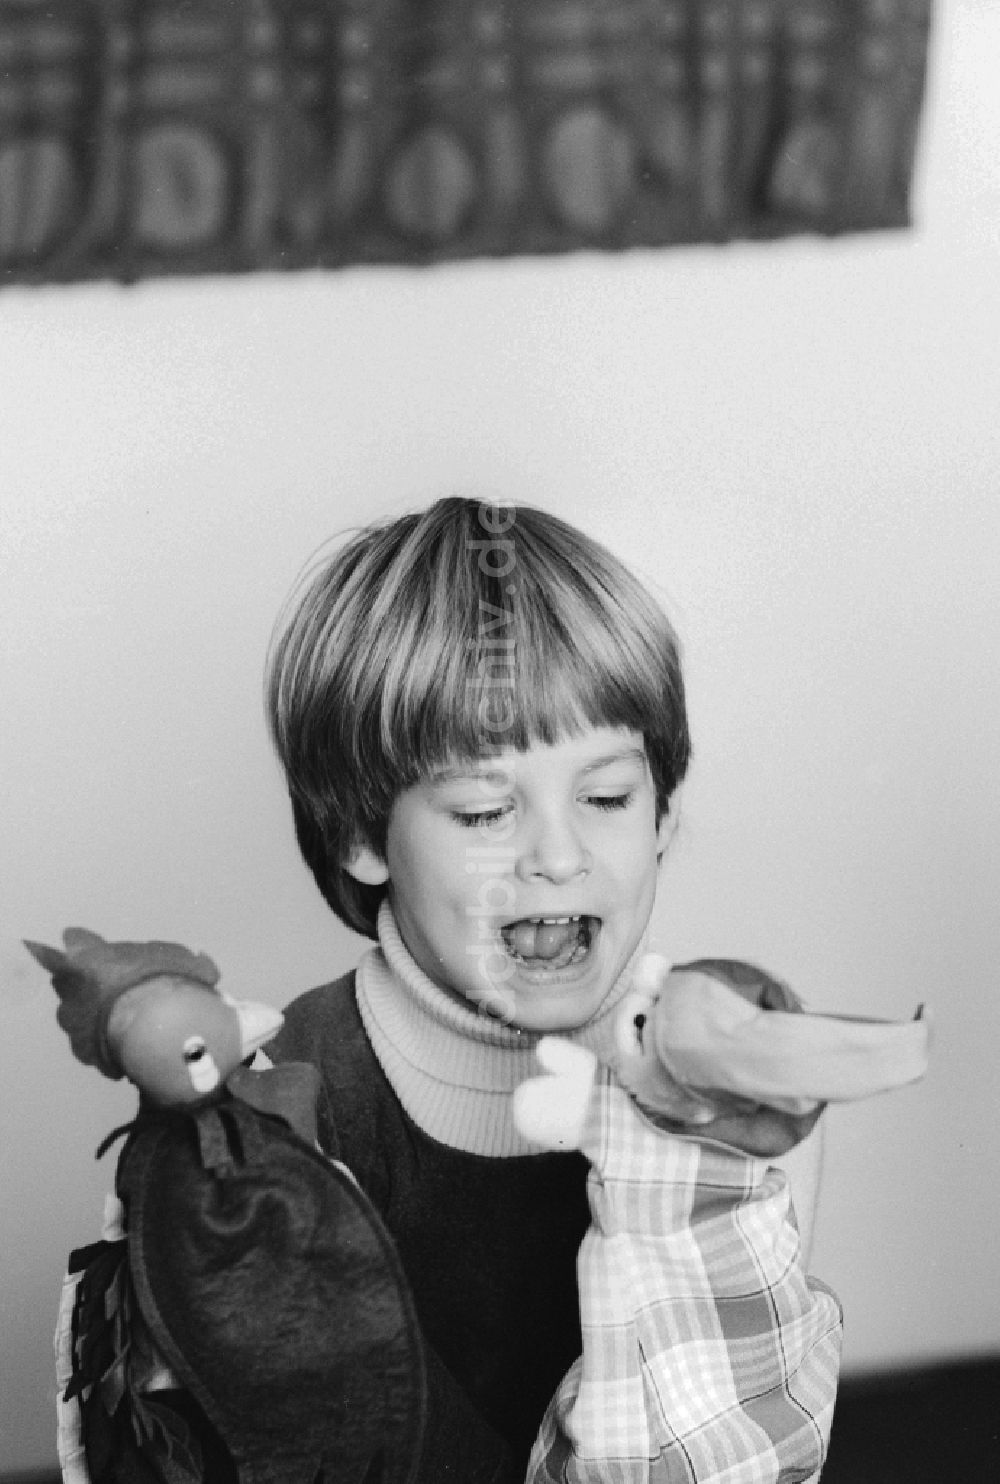 DDR-Bildarchiv: Berlin - Ein Kind spielt mit Handpuppen in Berlin, der ehemaligen Hauptstadt der DDR, Deutsche Demokratische Republik